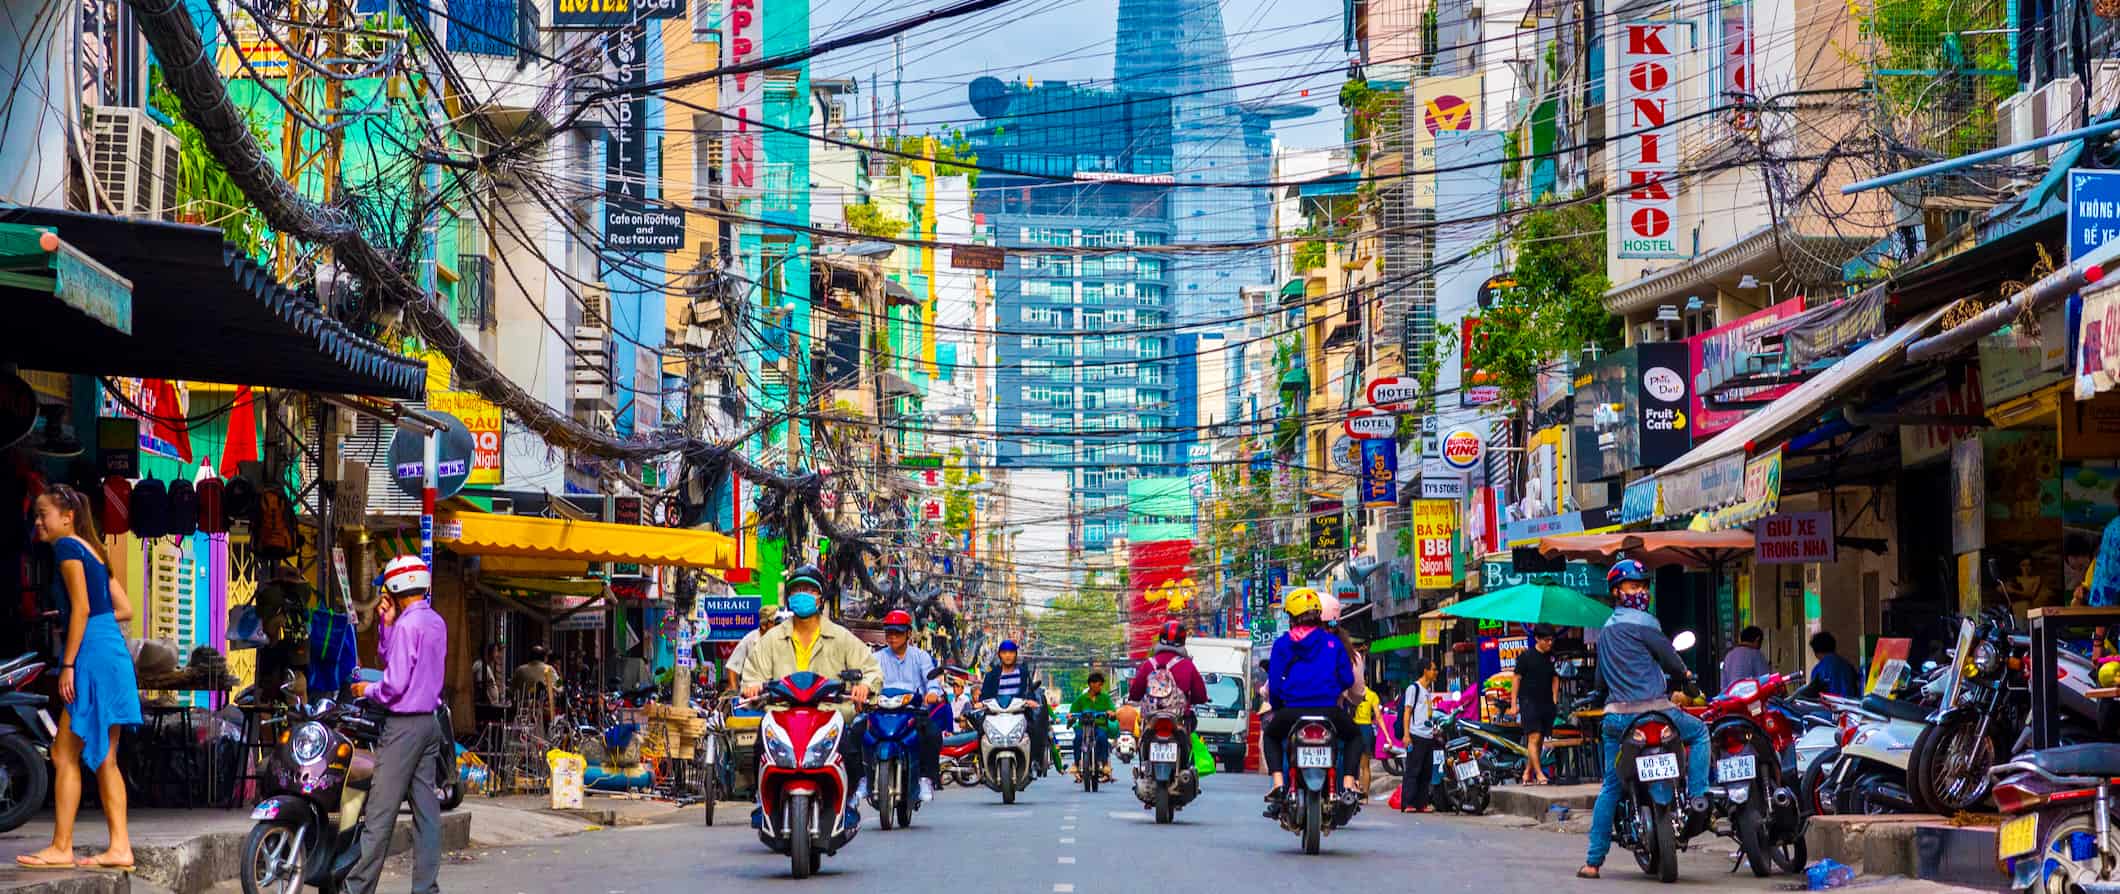 Estrada agitada cheia de transporte, em hushimin caótico, Vietnã